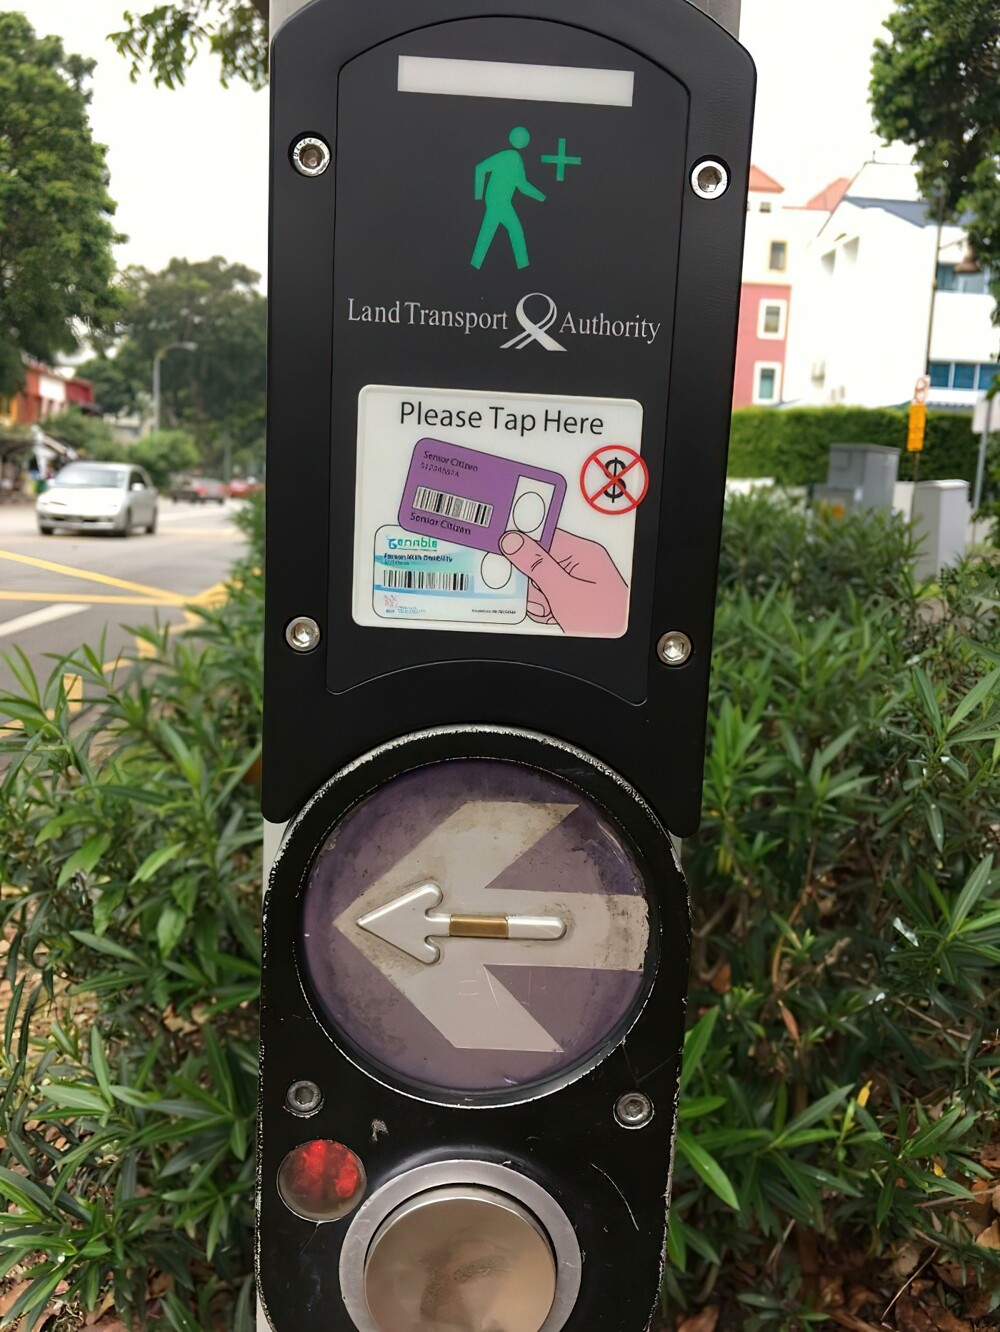 1. Сингапурский светофор даёт пожилым людям/инвалидам возможность увеличить время перехода, приложив специальную карточку